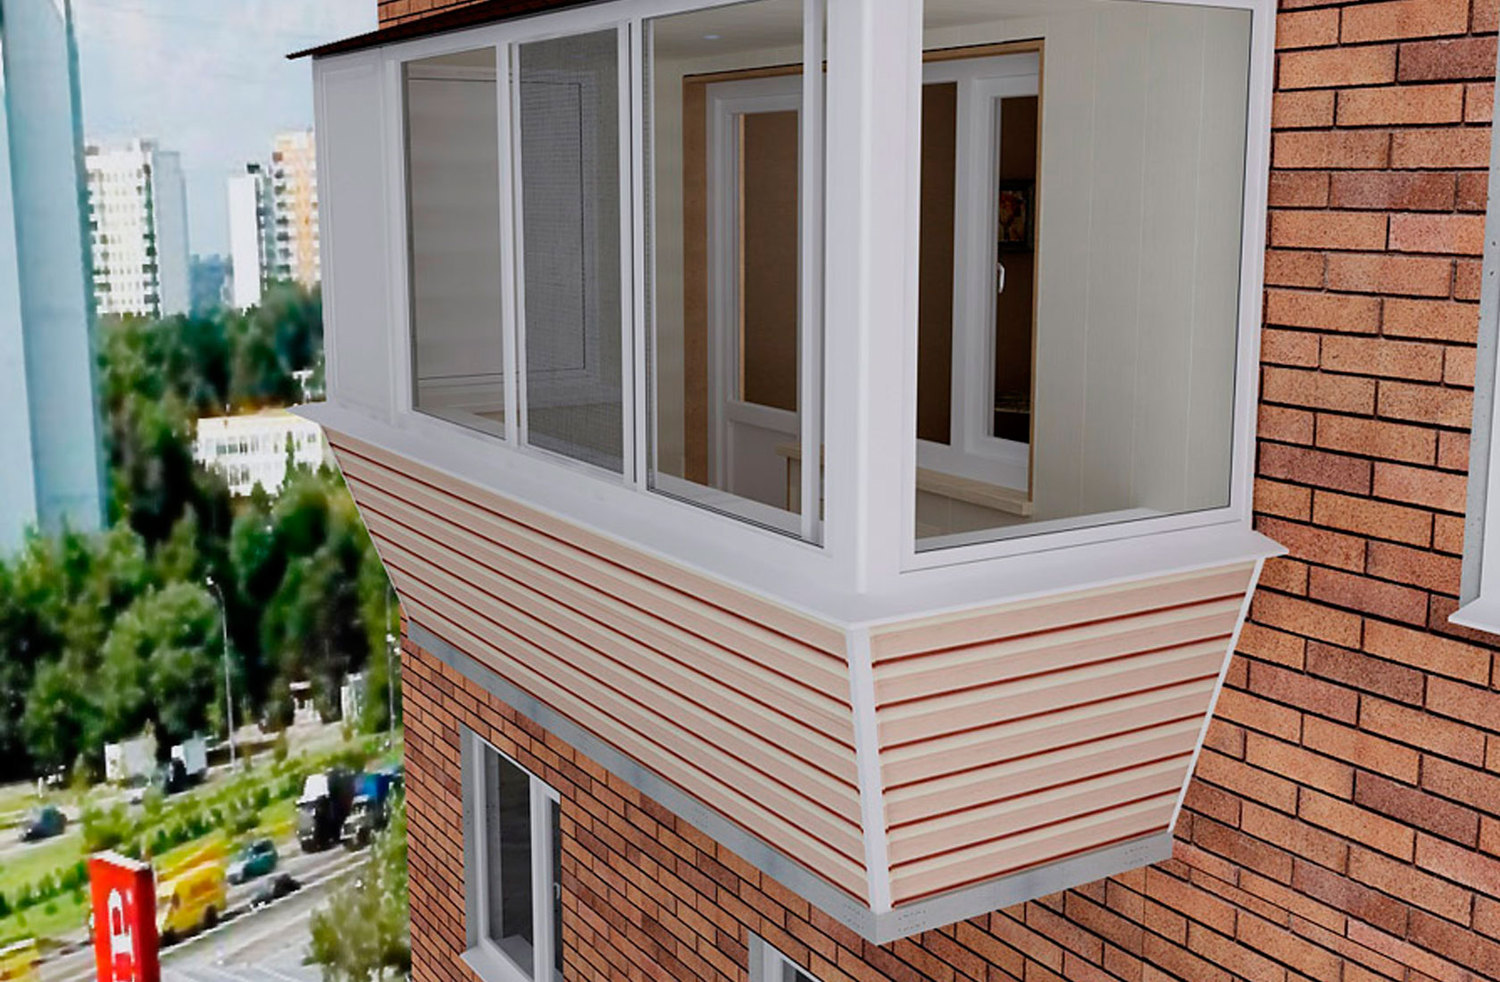 Балконы снаружи отделка – наружная облицовка своими руками из минеральной штукатурки и профнастилом, чем еще обшить